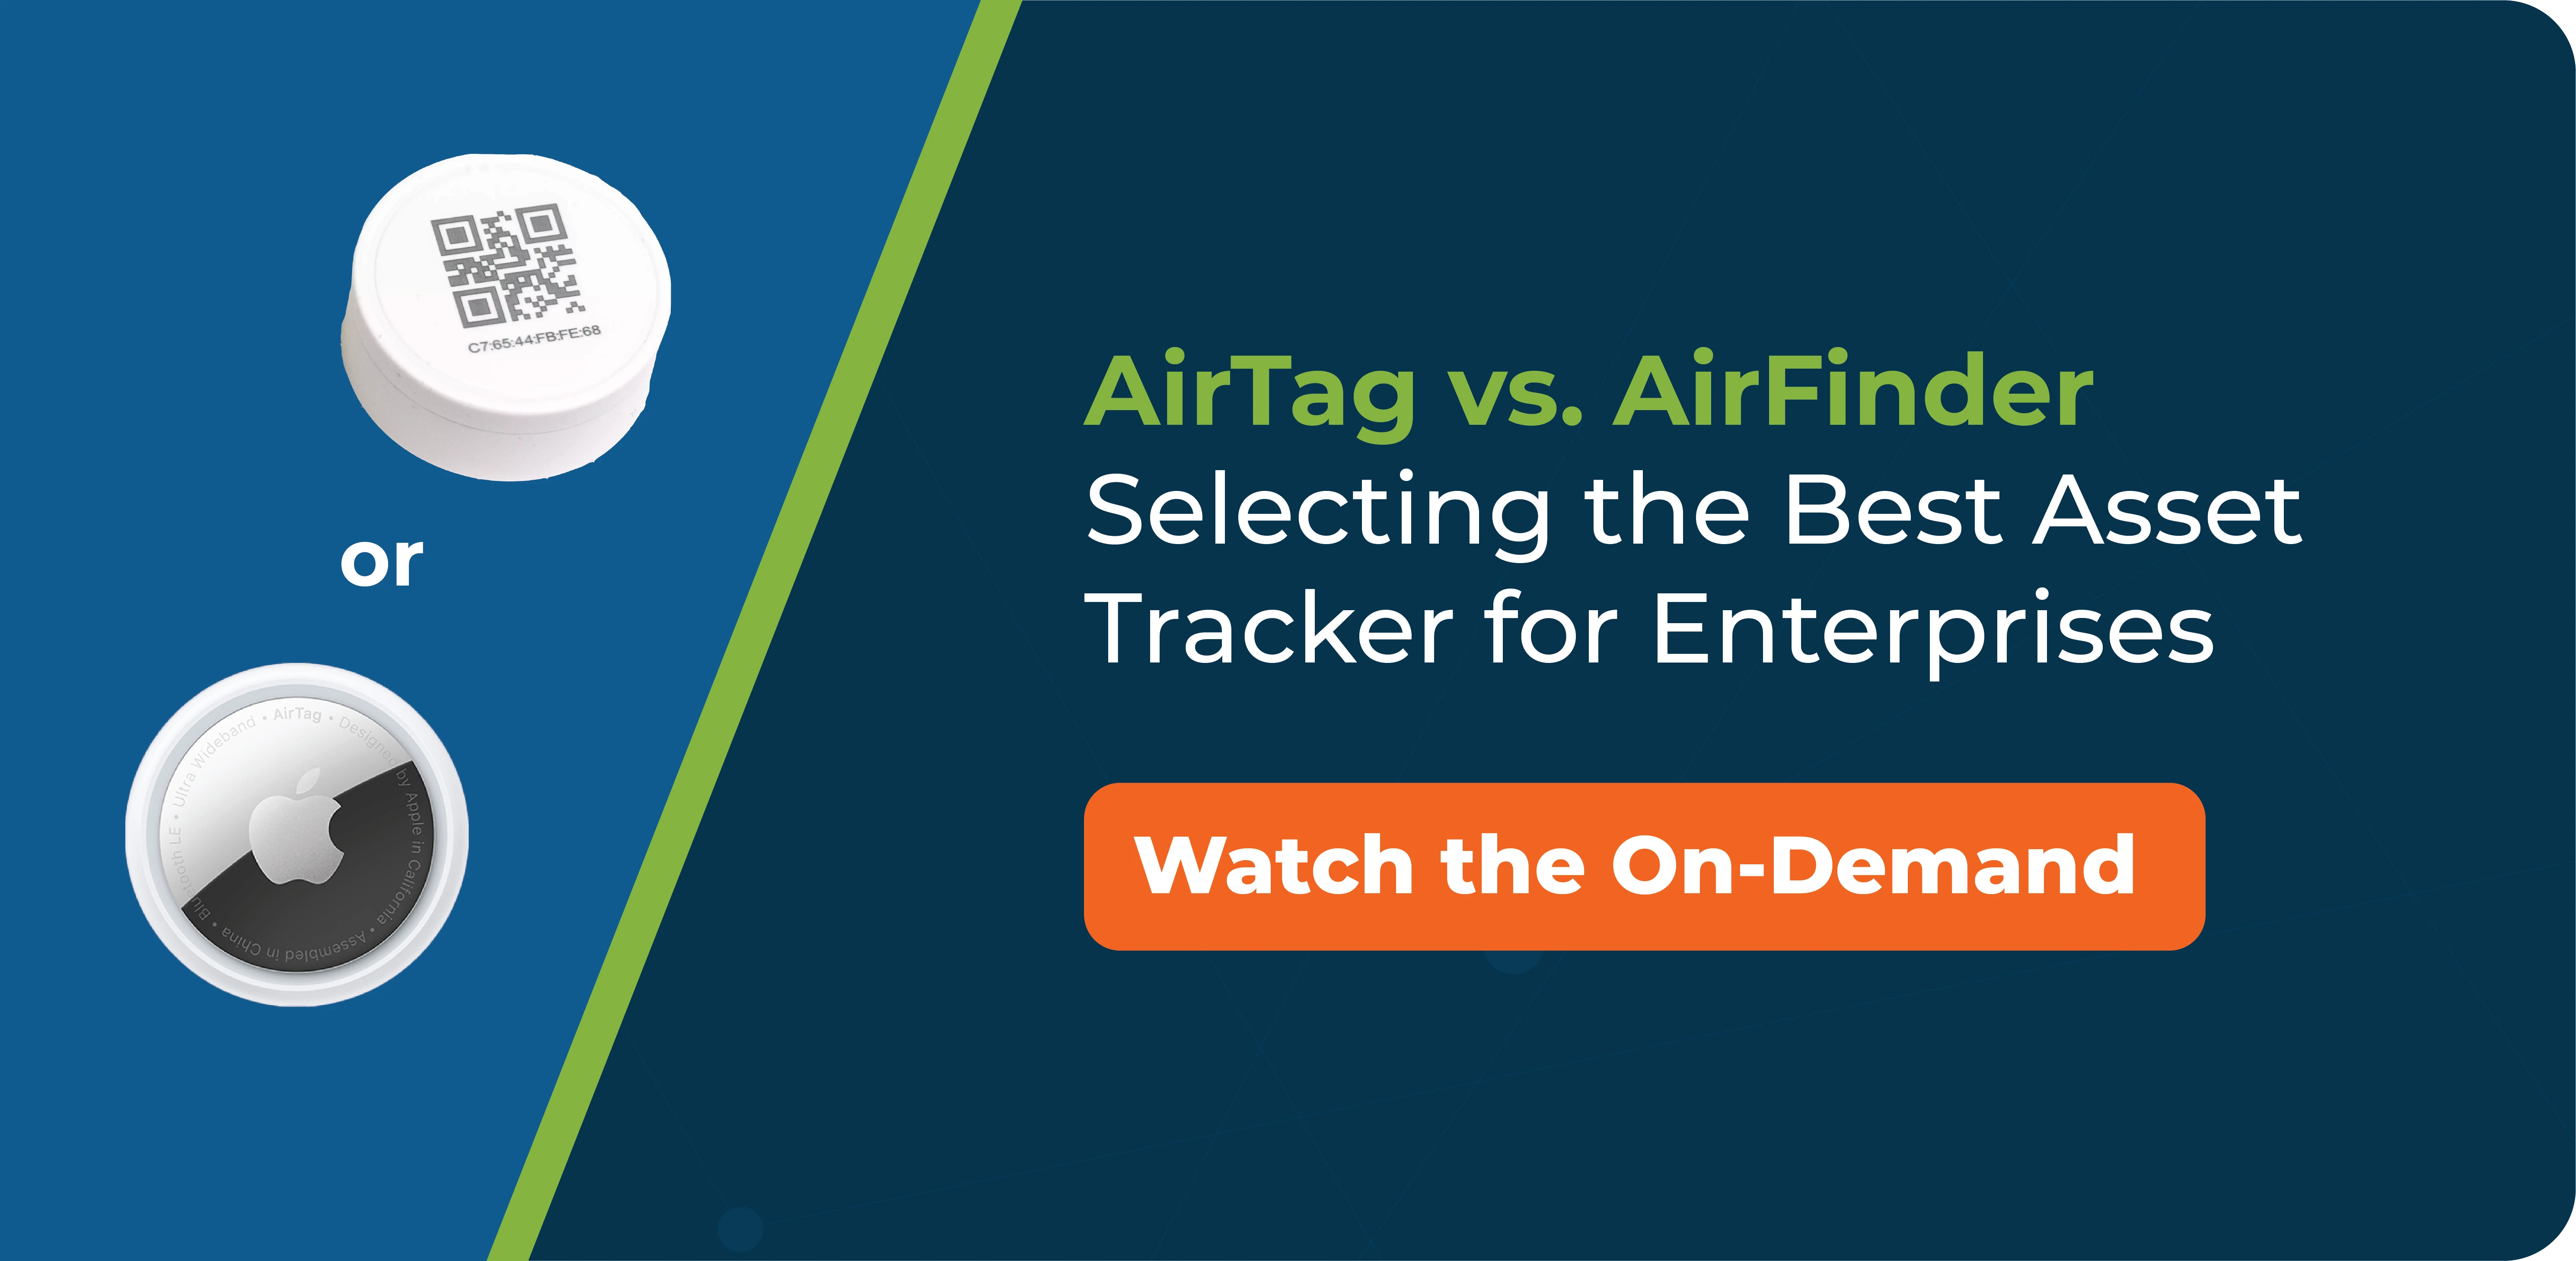 comment AirTag se compare-t-il à AirFinder pour les grandes entreprises ?